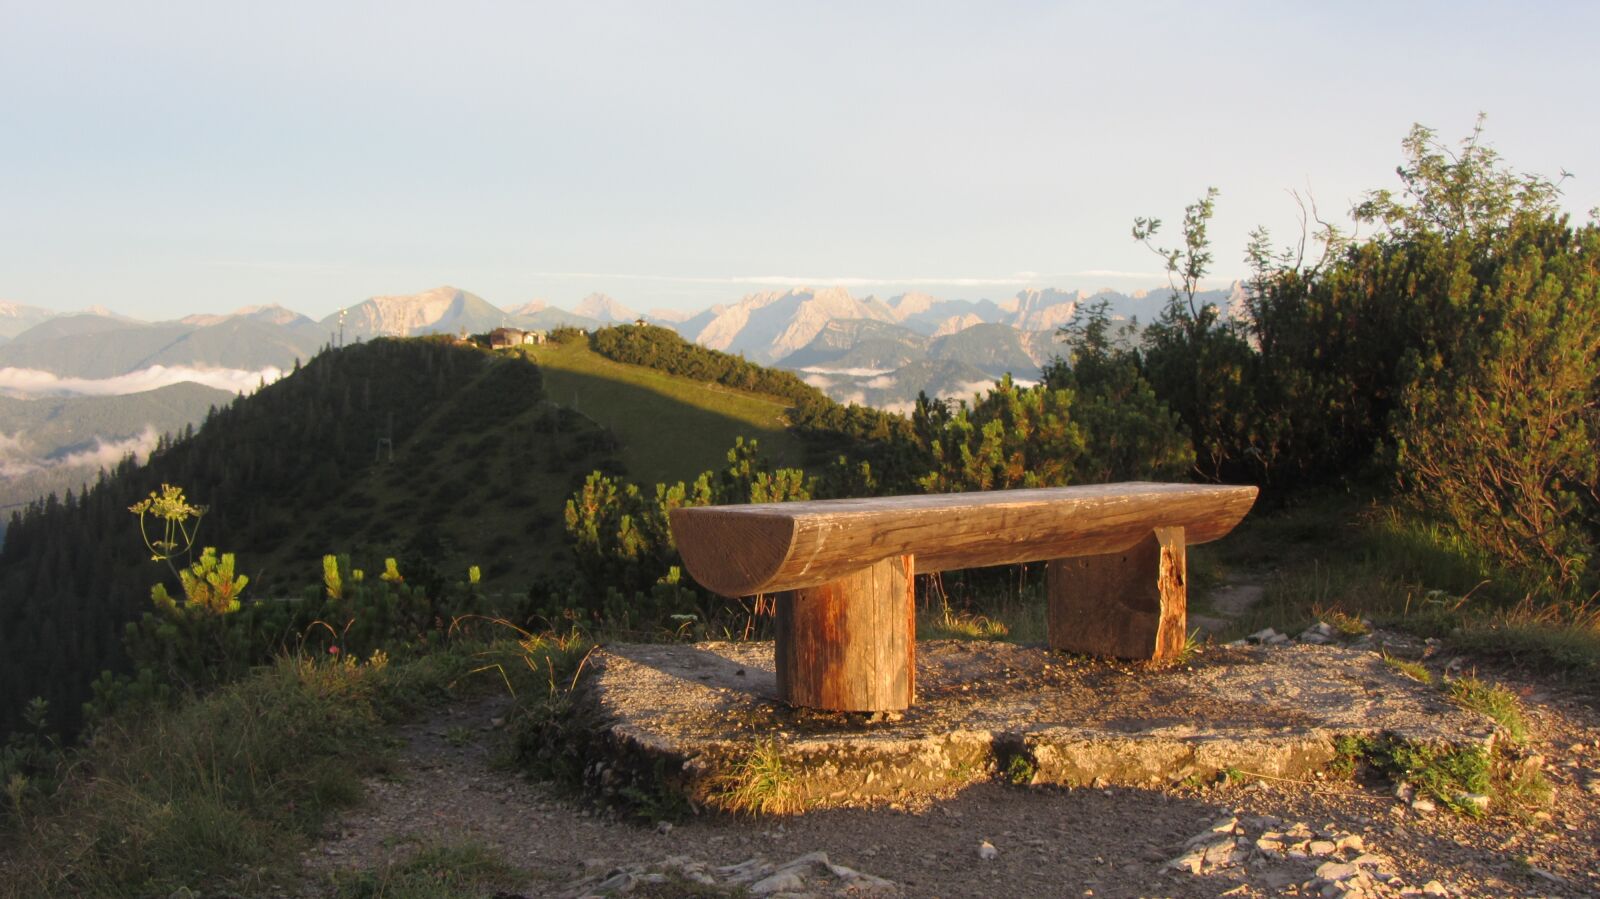 Canon PowerShot SX230 HS sample photo. View, landscape, mountains photography